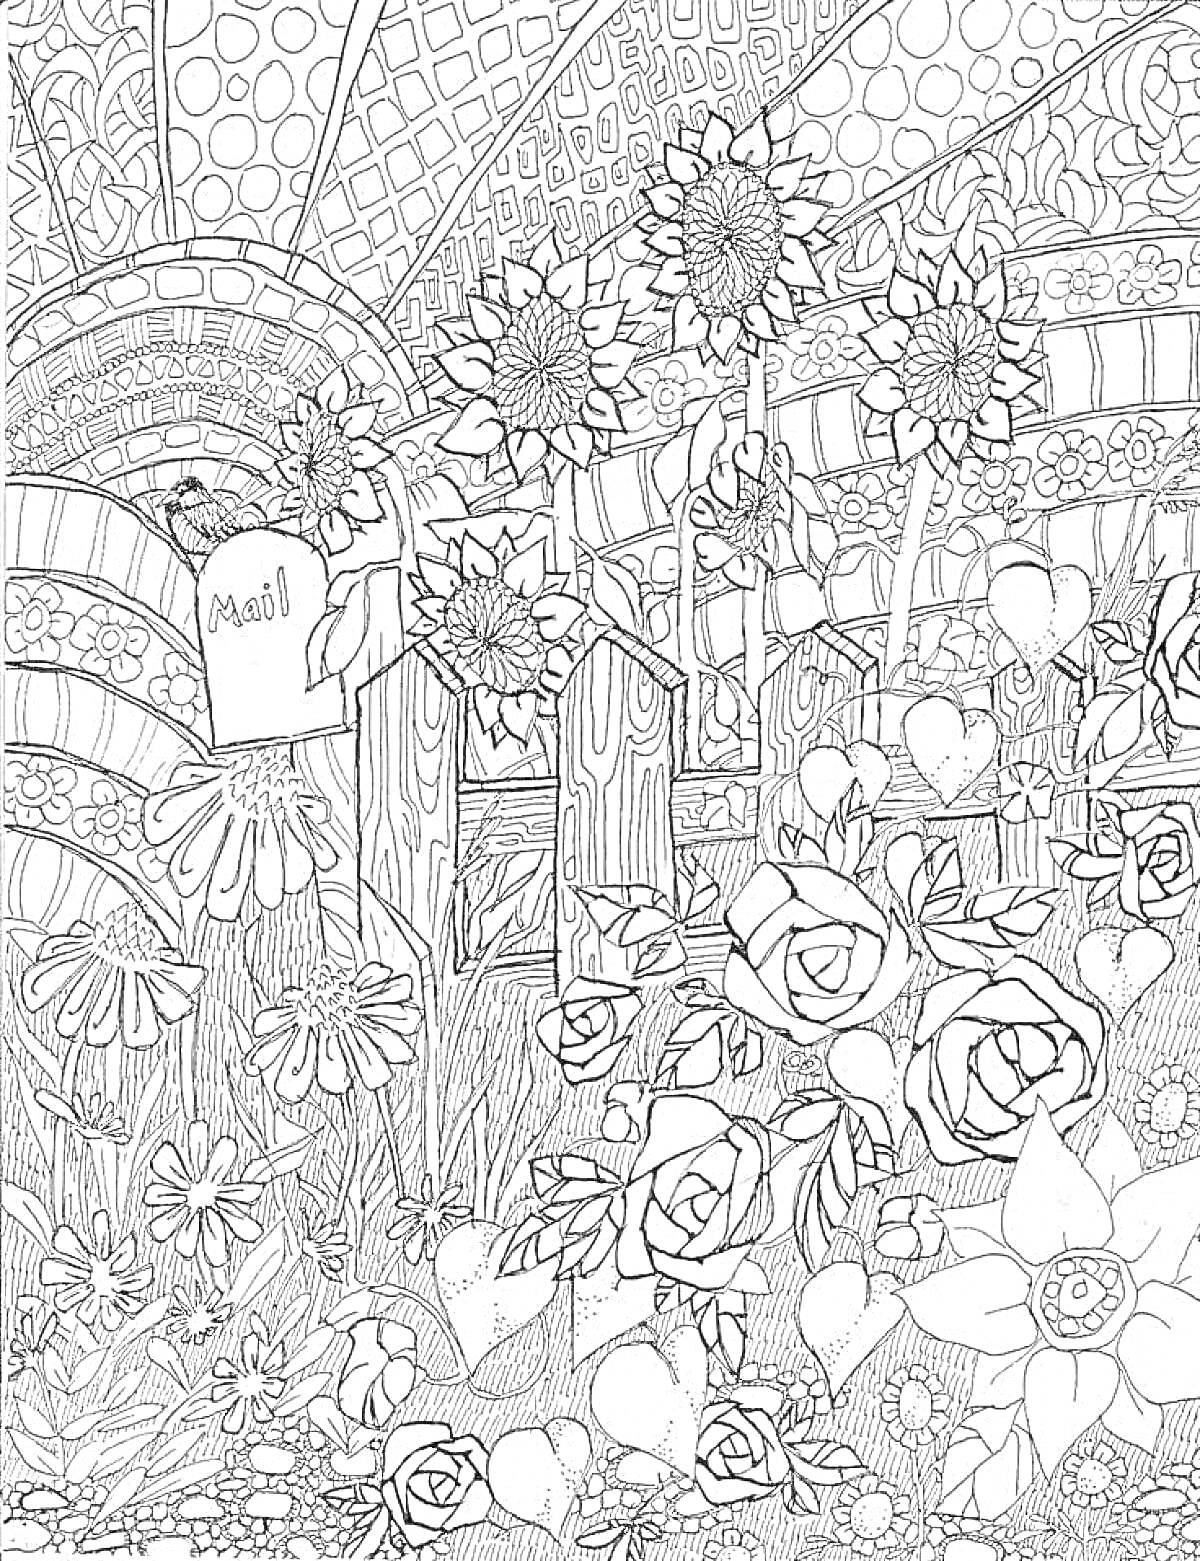 Раскраска Цветочный сад с подсолнухами, полевыми цветами, розами, почтовым ящиком и забором на фоне абстрактного узора